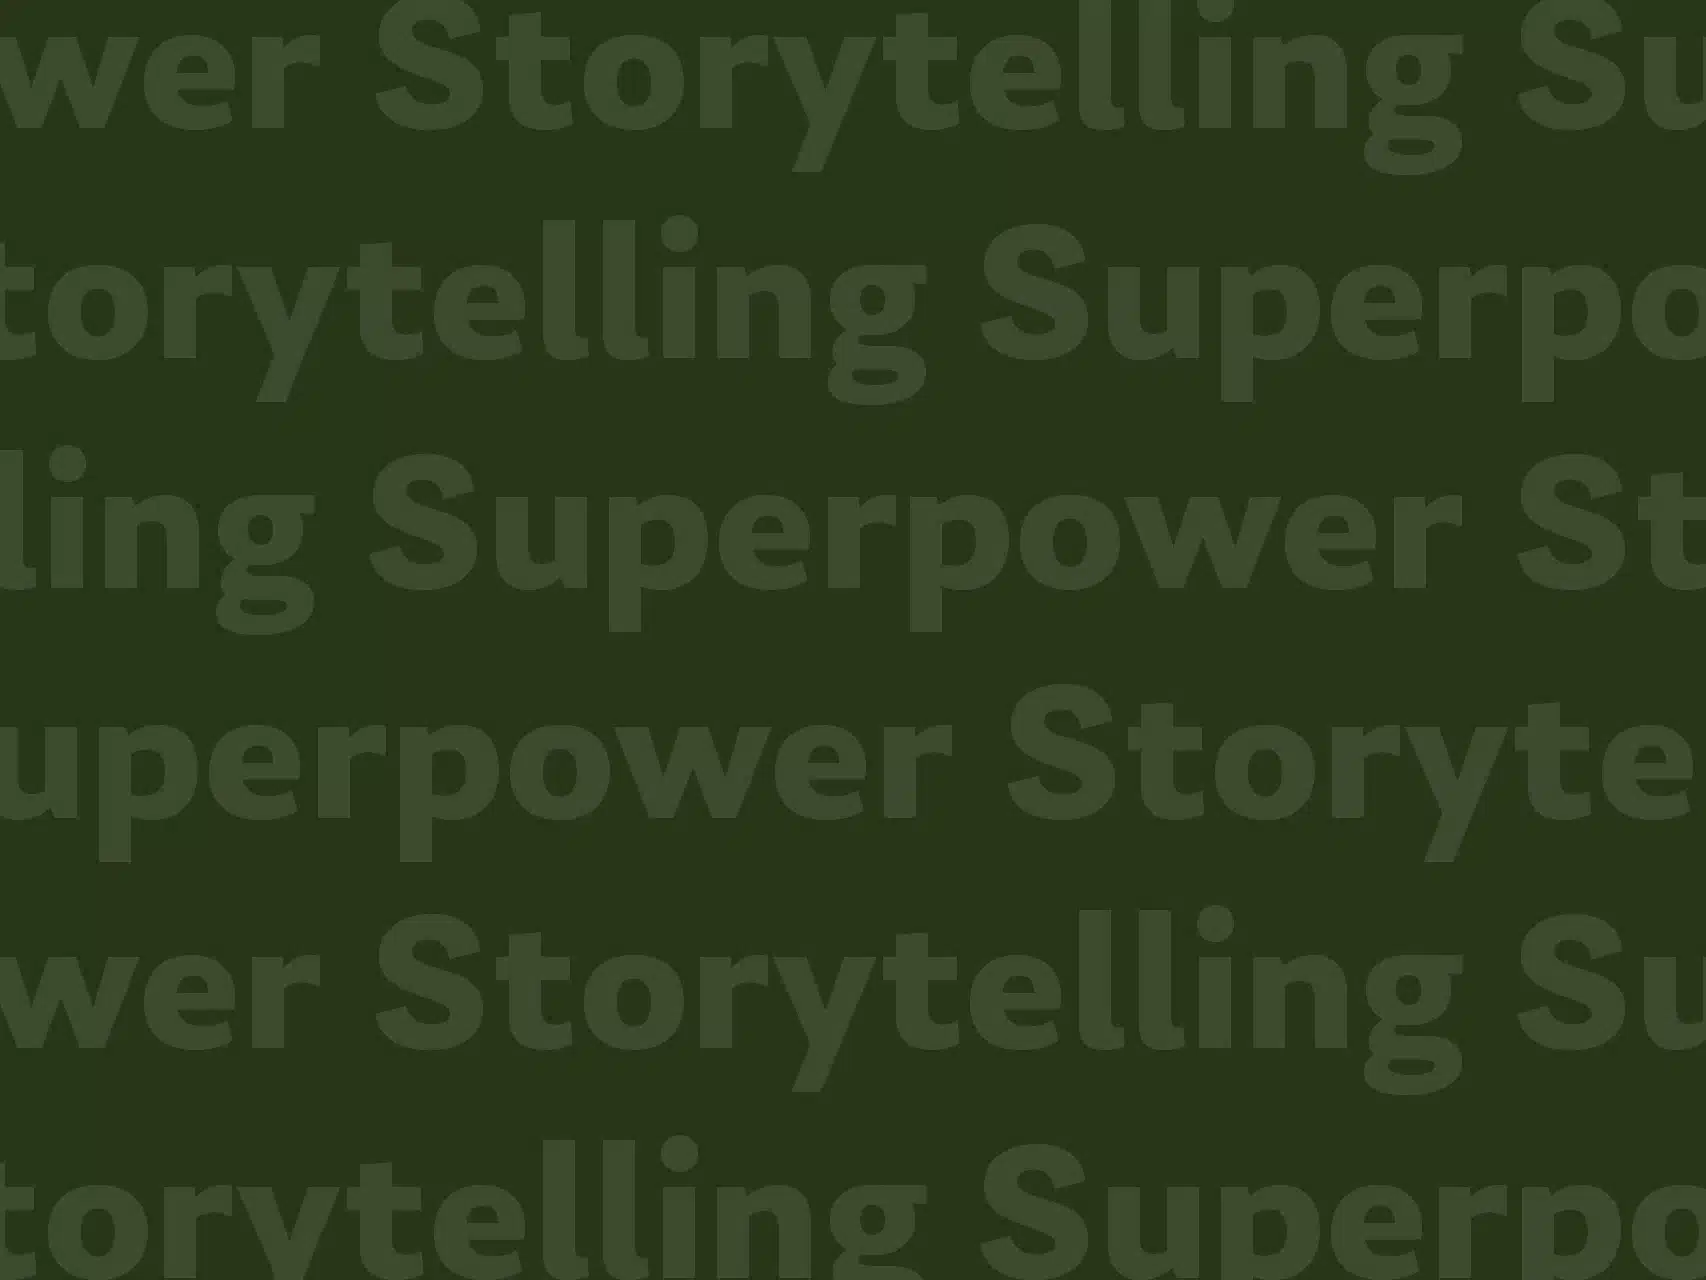 Mentoring Programm Storytelling Typo